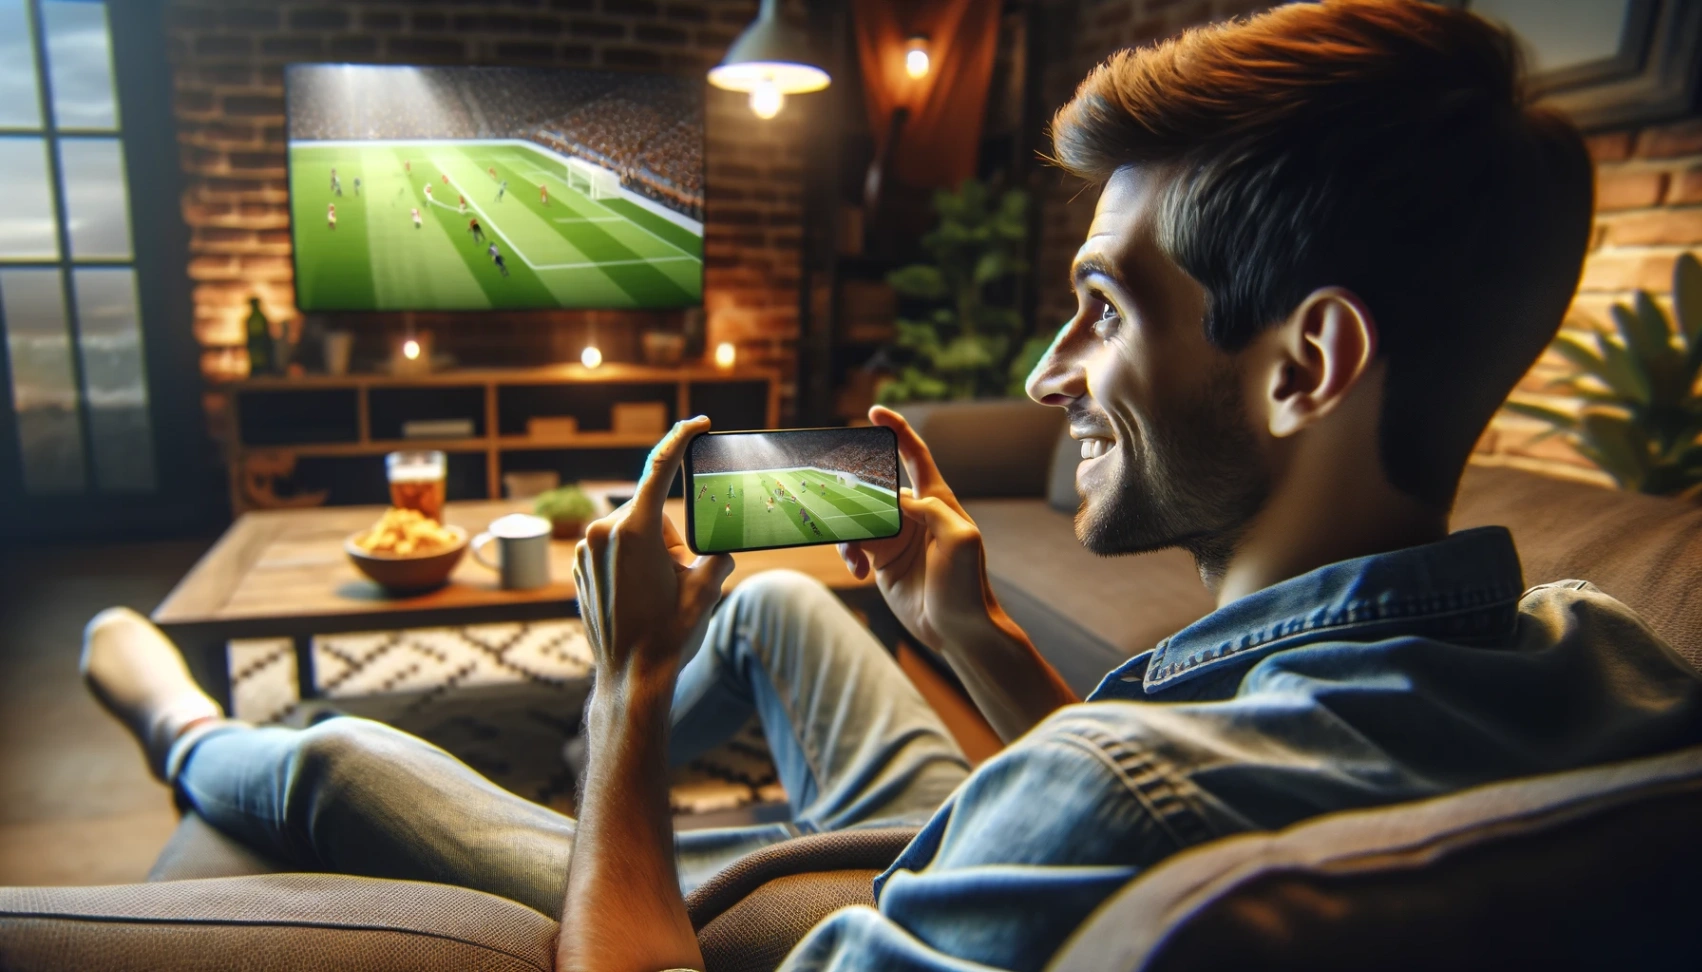 फुटबॉल ऑनलाइन देखने के एप्लिकेशन - डाउनलोड करना कैसे सीखें [WW]